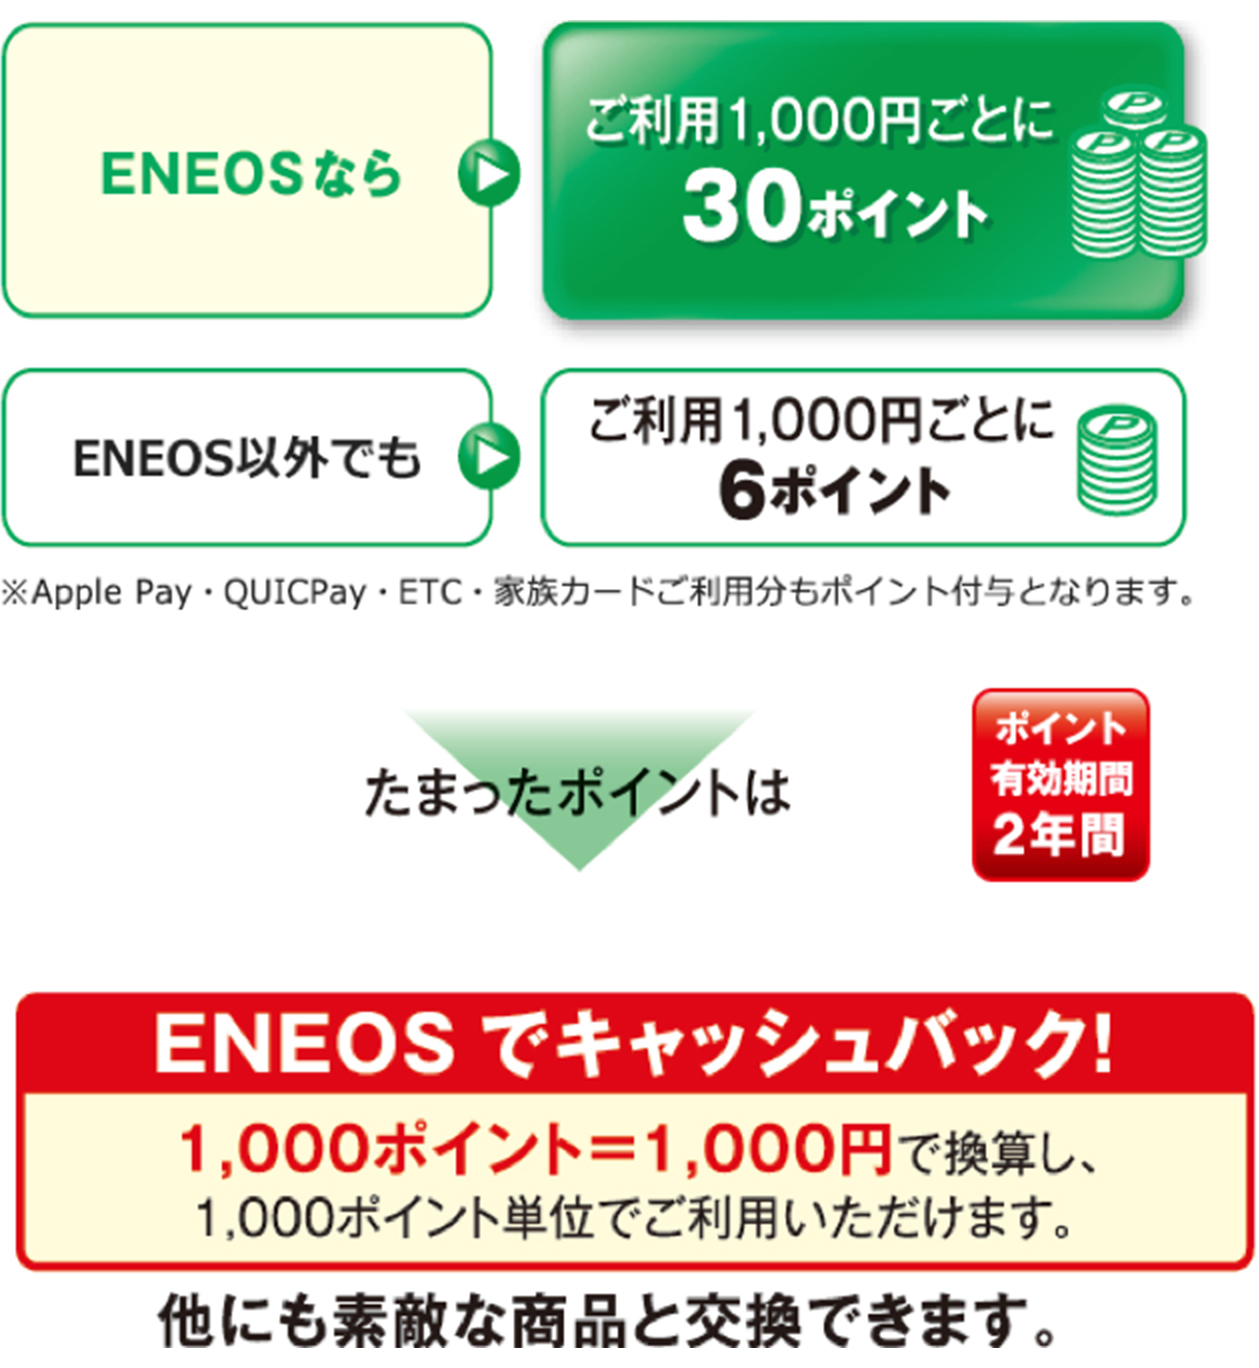 ENEOSなら→ご利用1,000円ごとに30ポイントENEOS以外でも→ご利用1,000円ごとに6ポイント※Apple Pay・QUICKPay・ETC・家族カードご利用分もポイント付与となります。たまったポイントはポイント有効期間2年間ENEOSでキャッシュバック1,000ポイント=1,000円で換算し、1,000ポイント単位でご利用いただけます。他にも素敵な商品と交換できます。